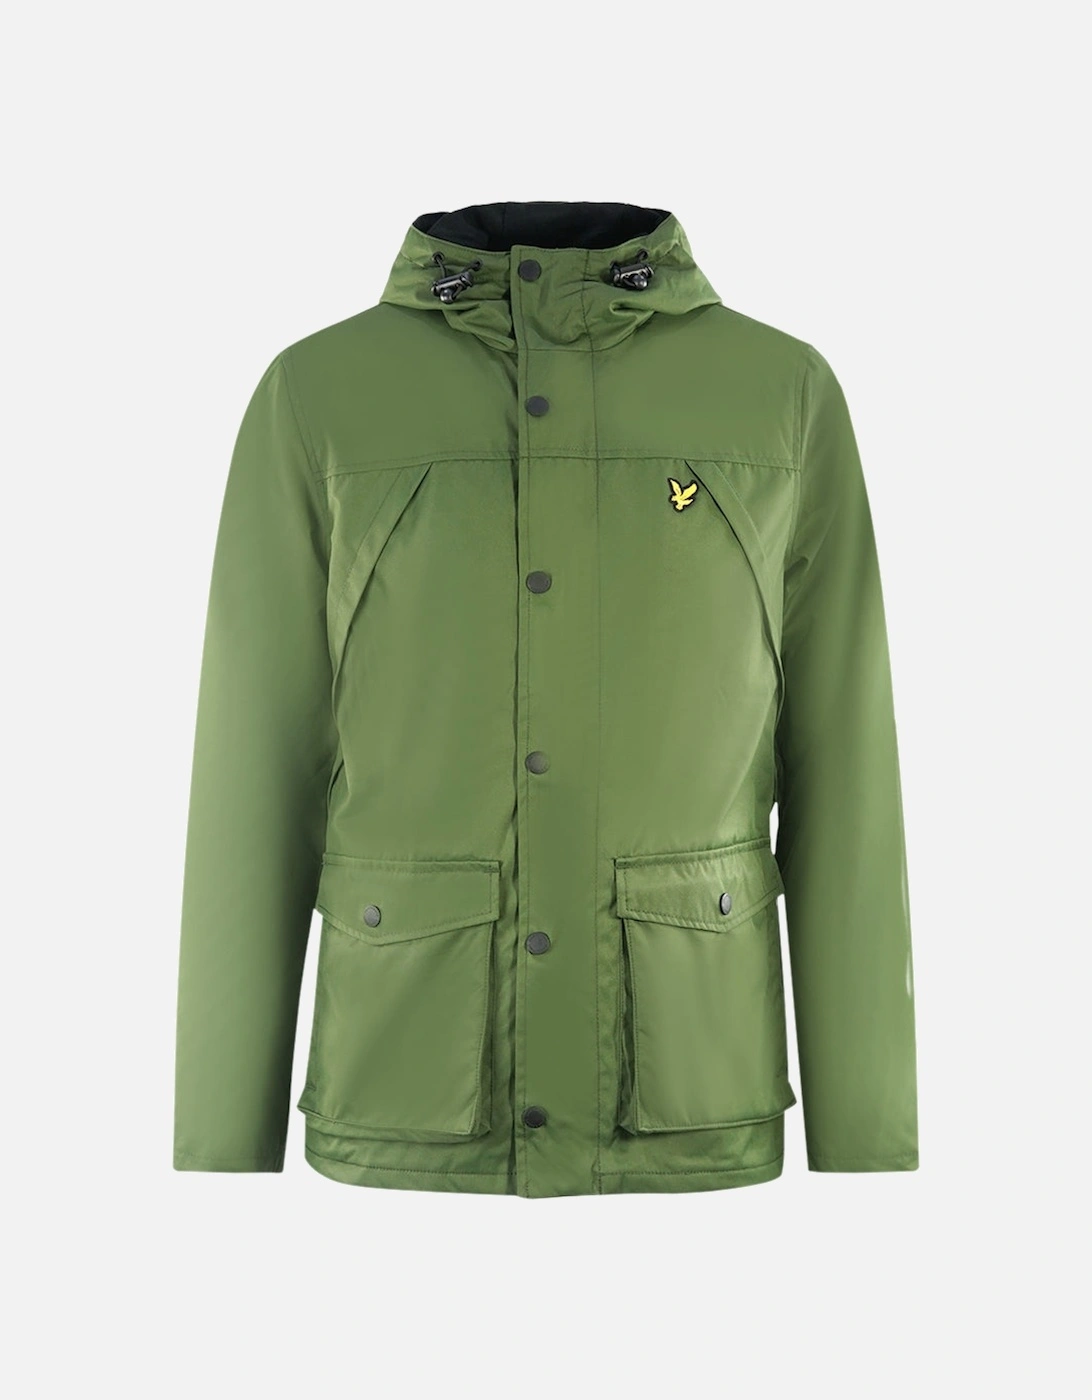 Lyle & Scott Micro Fleece Lined Green Jacket, 3 of 2